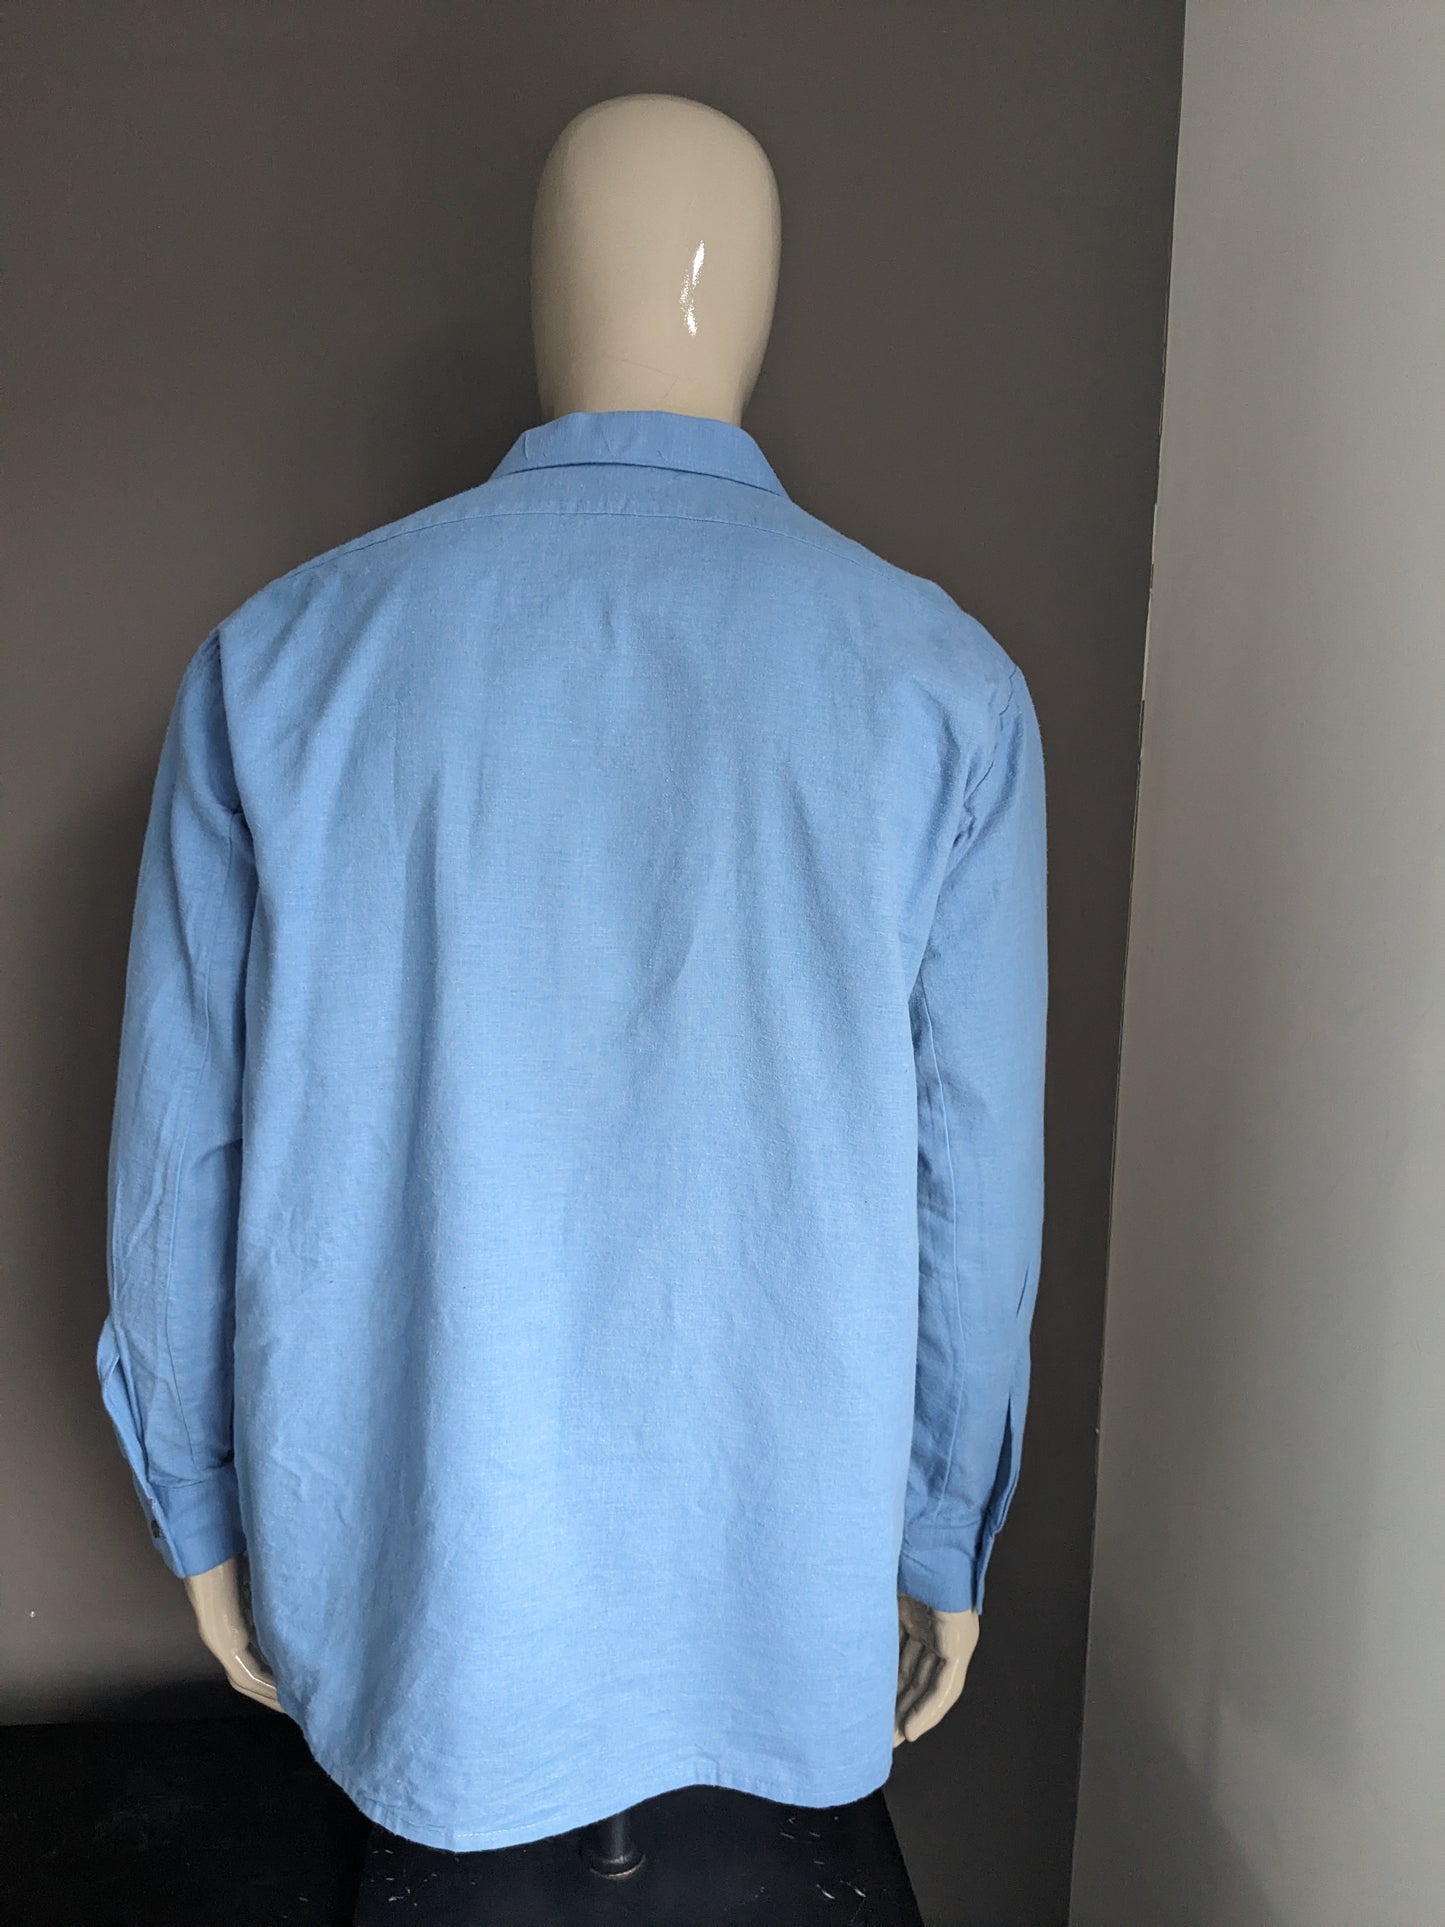 Camisa de los 70 vintage con cuello puntual. Color azul. Tamaño 2xl / xxl.